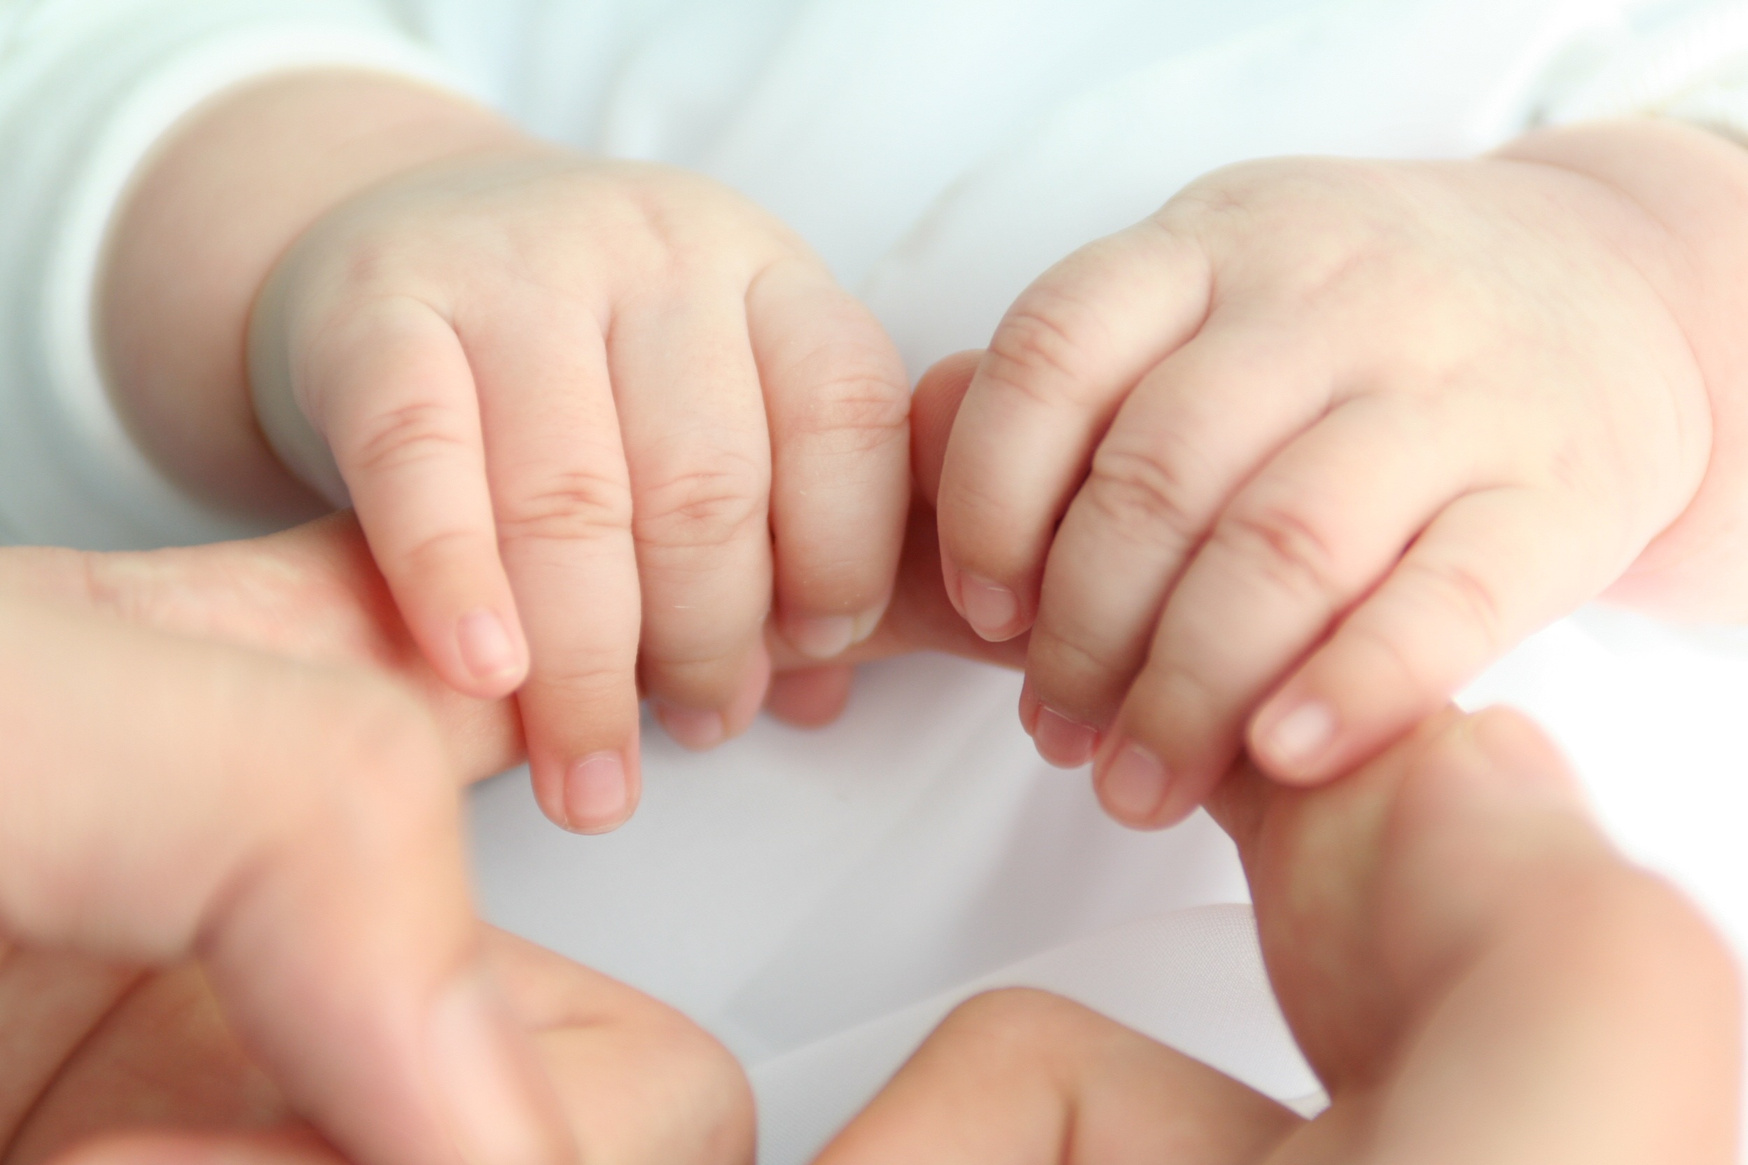 Hands of a Baby